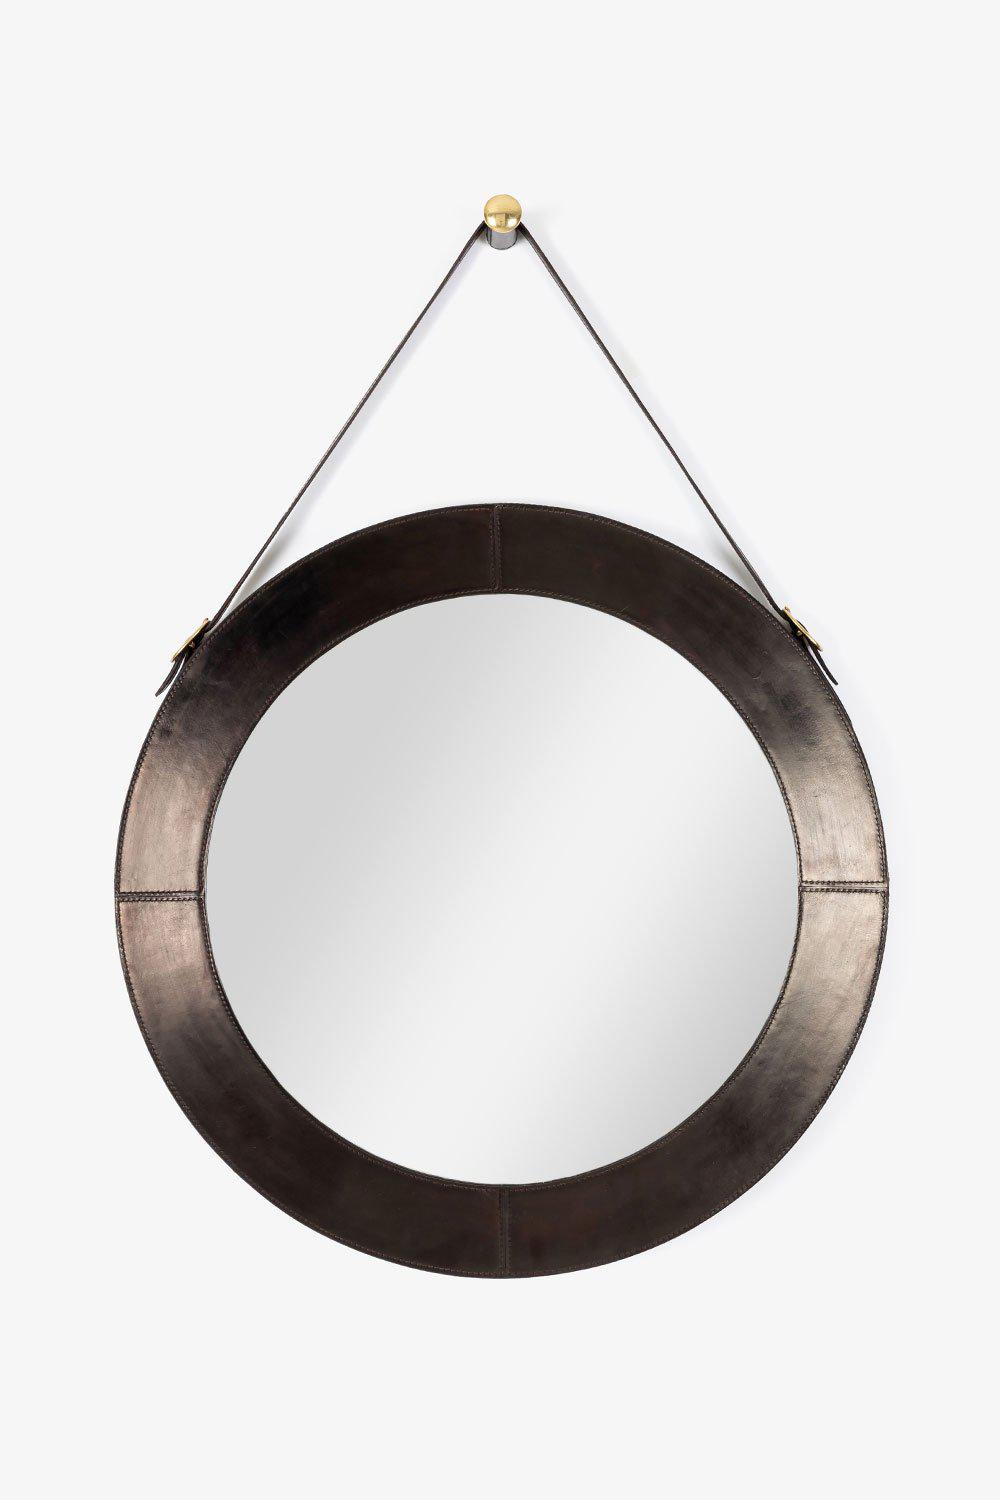 Rundt speil, skinn med stropp - Halvor Bakke Lama Interiør